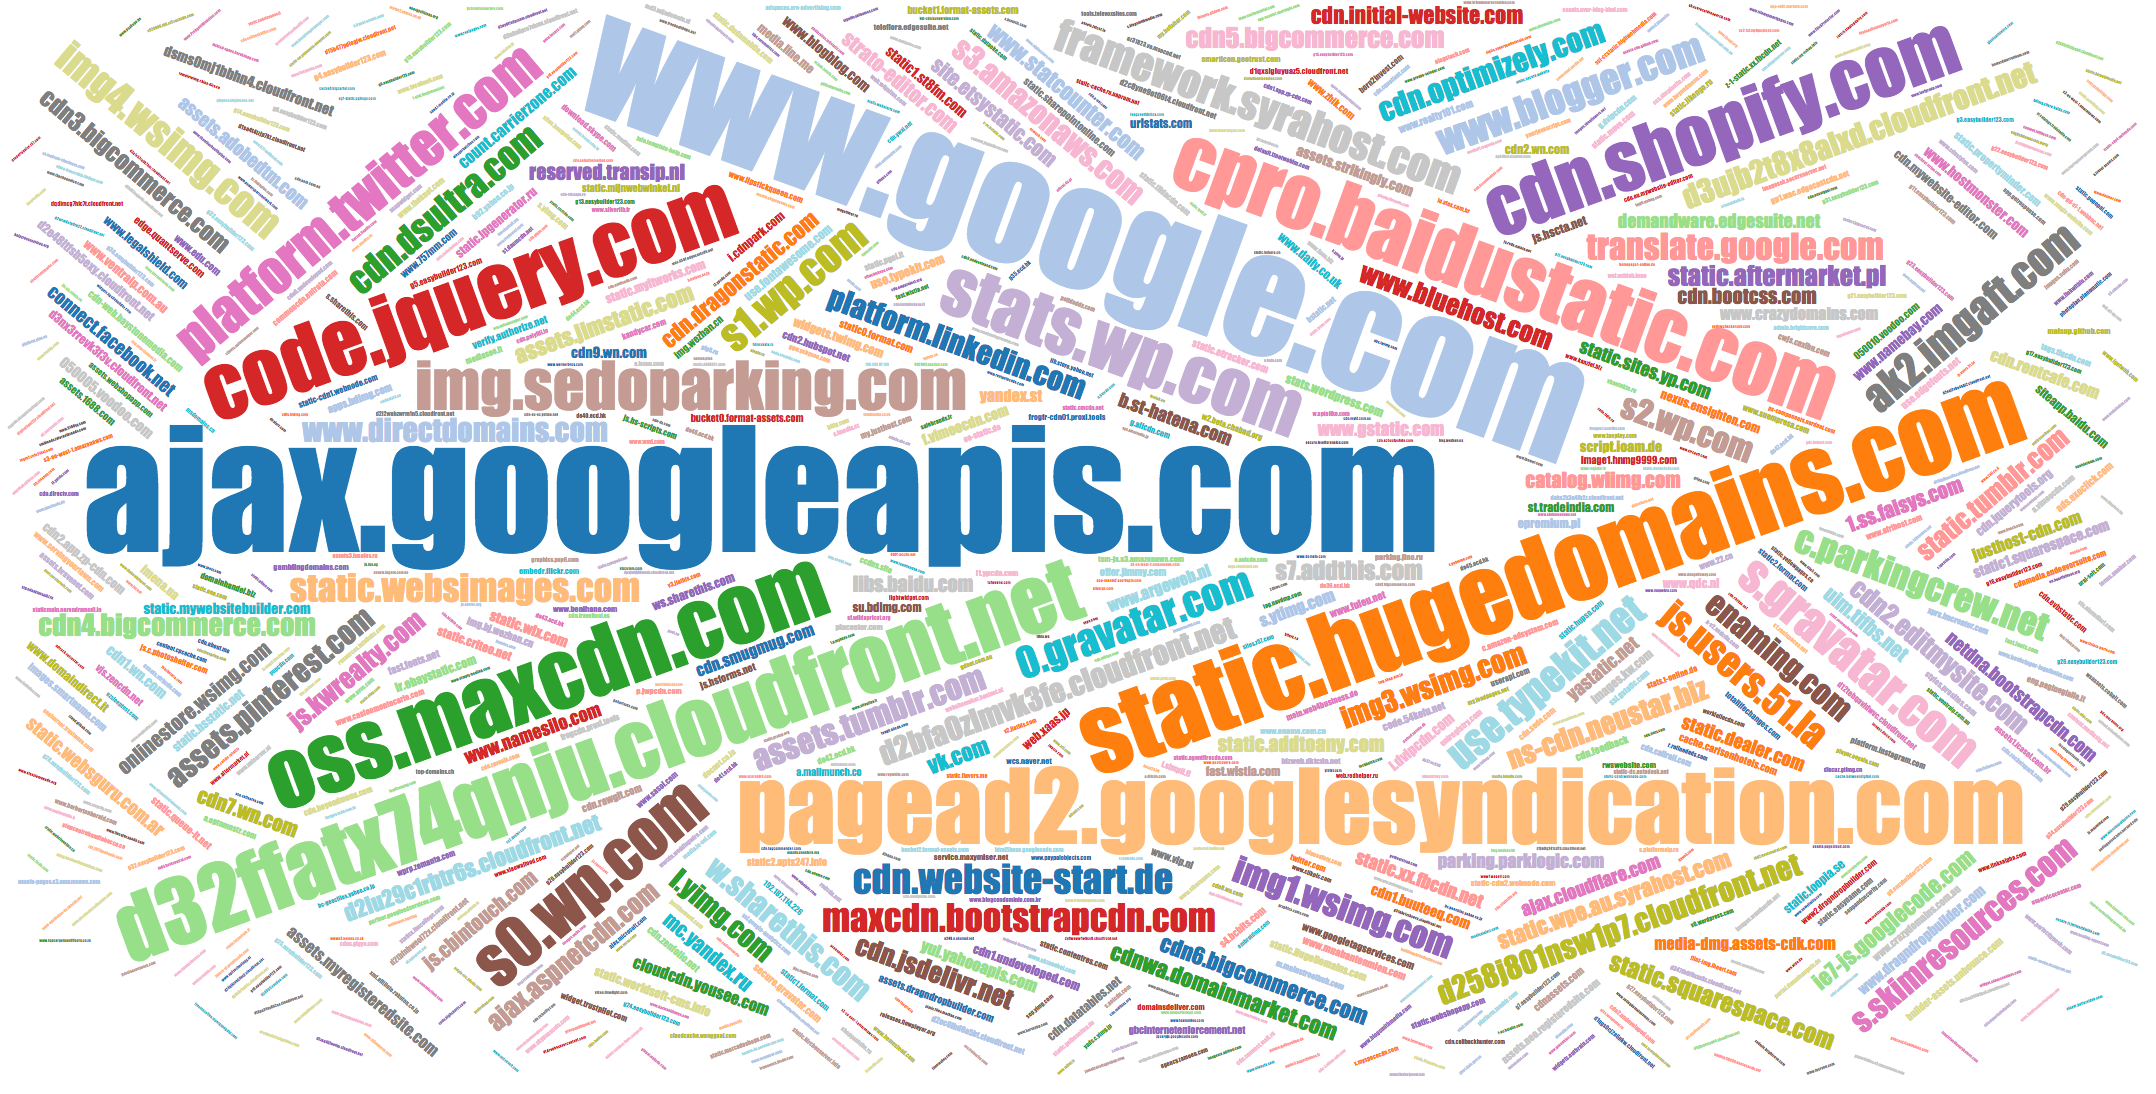 Popular names of JS domains g.alicdn.com, gbcinternetenforcement.net, etc.